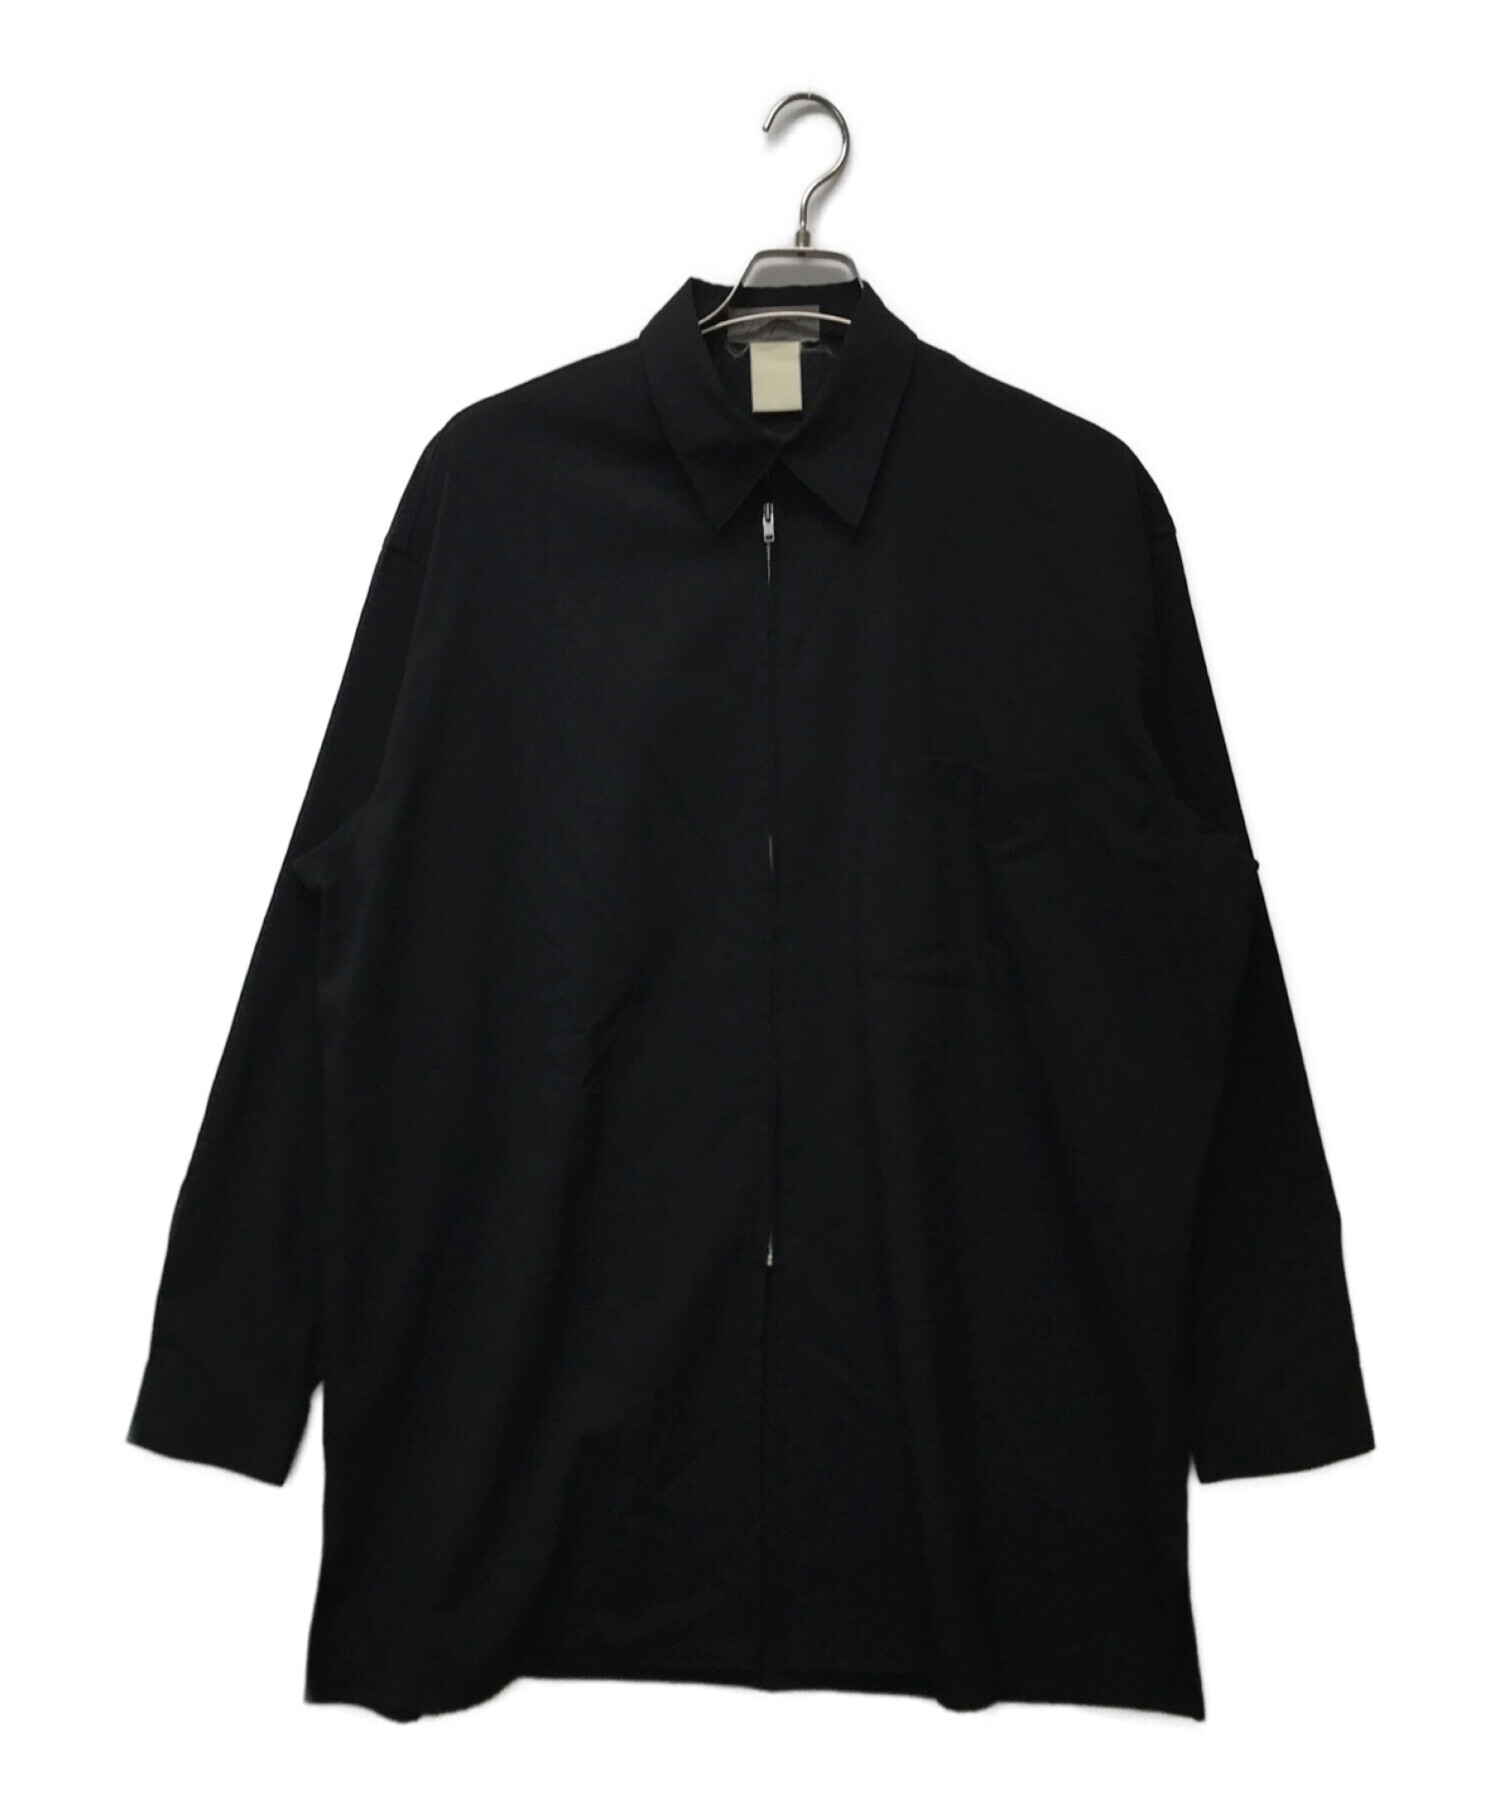 Yohji Yamamoto pour homme (ヨウジヤマモト プールオム) ジップアップシャツジャケット ブラック サイズ:M